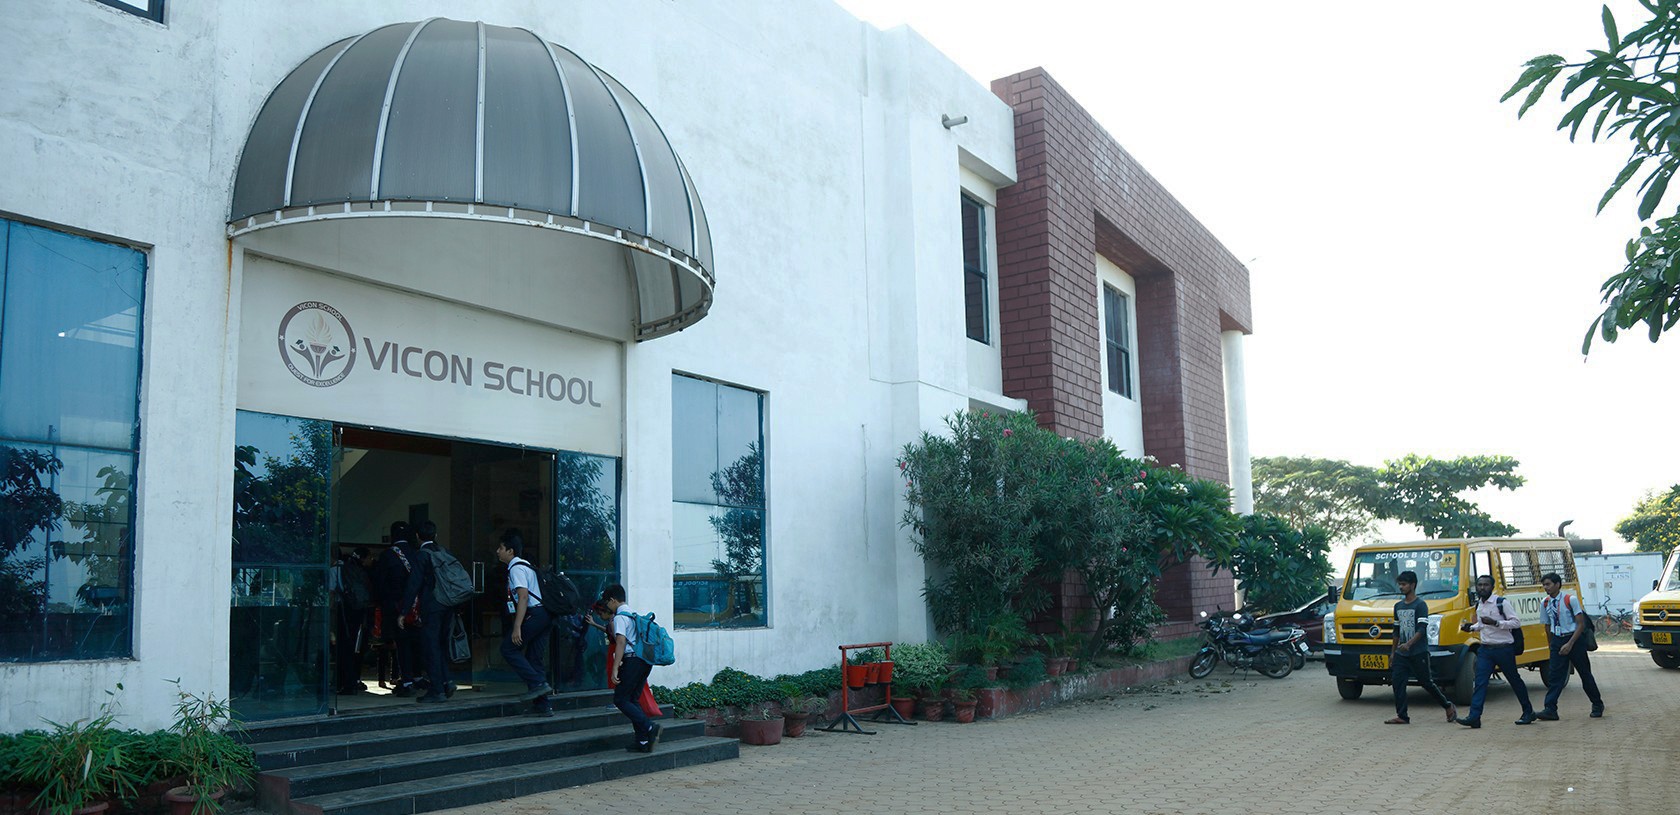 Vicon School Building